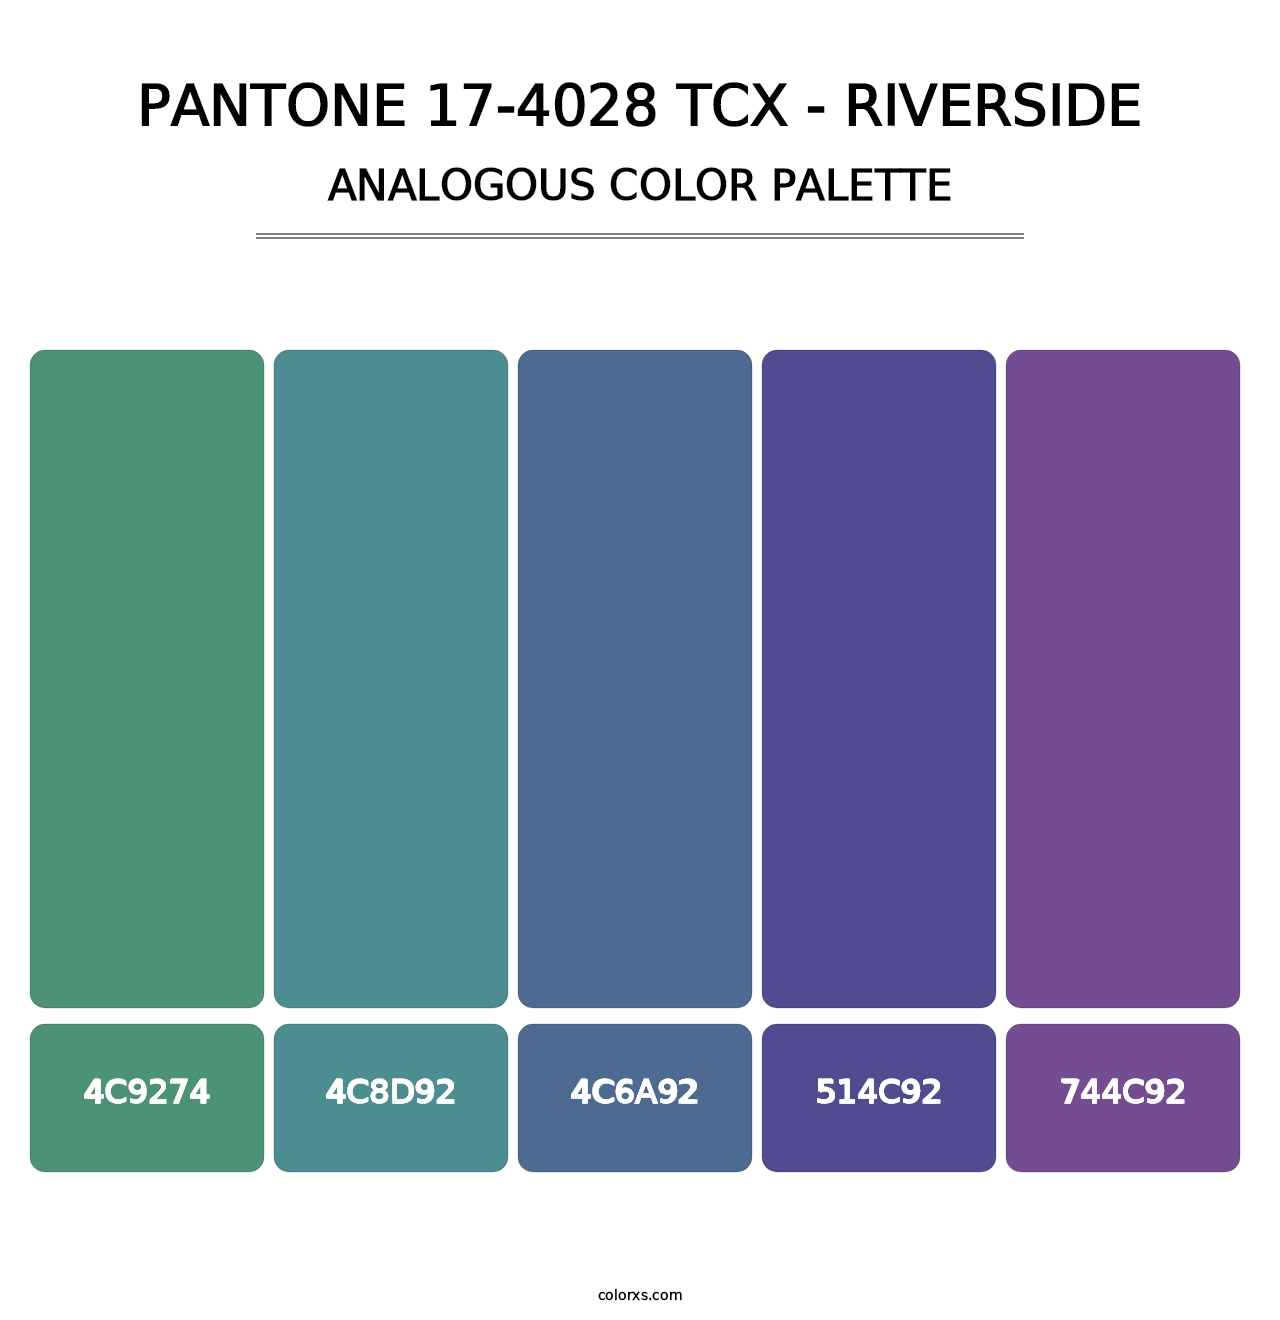 PANTONE 17-4028 TCX - Riverside - Analogous Color Palette